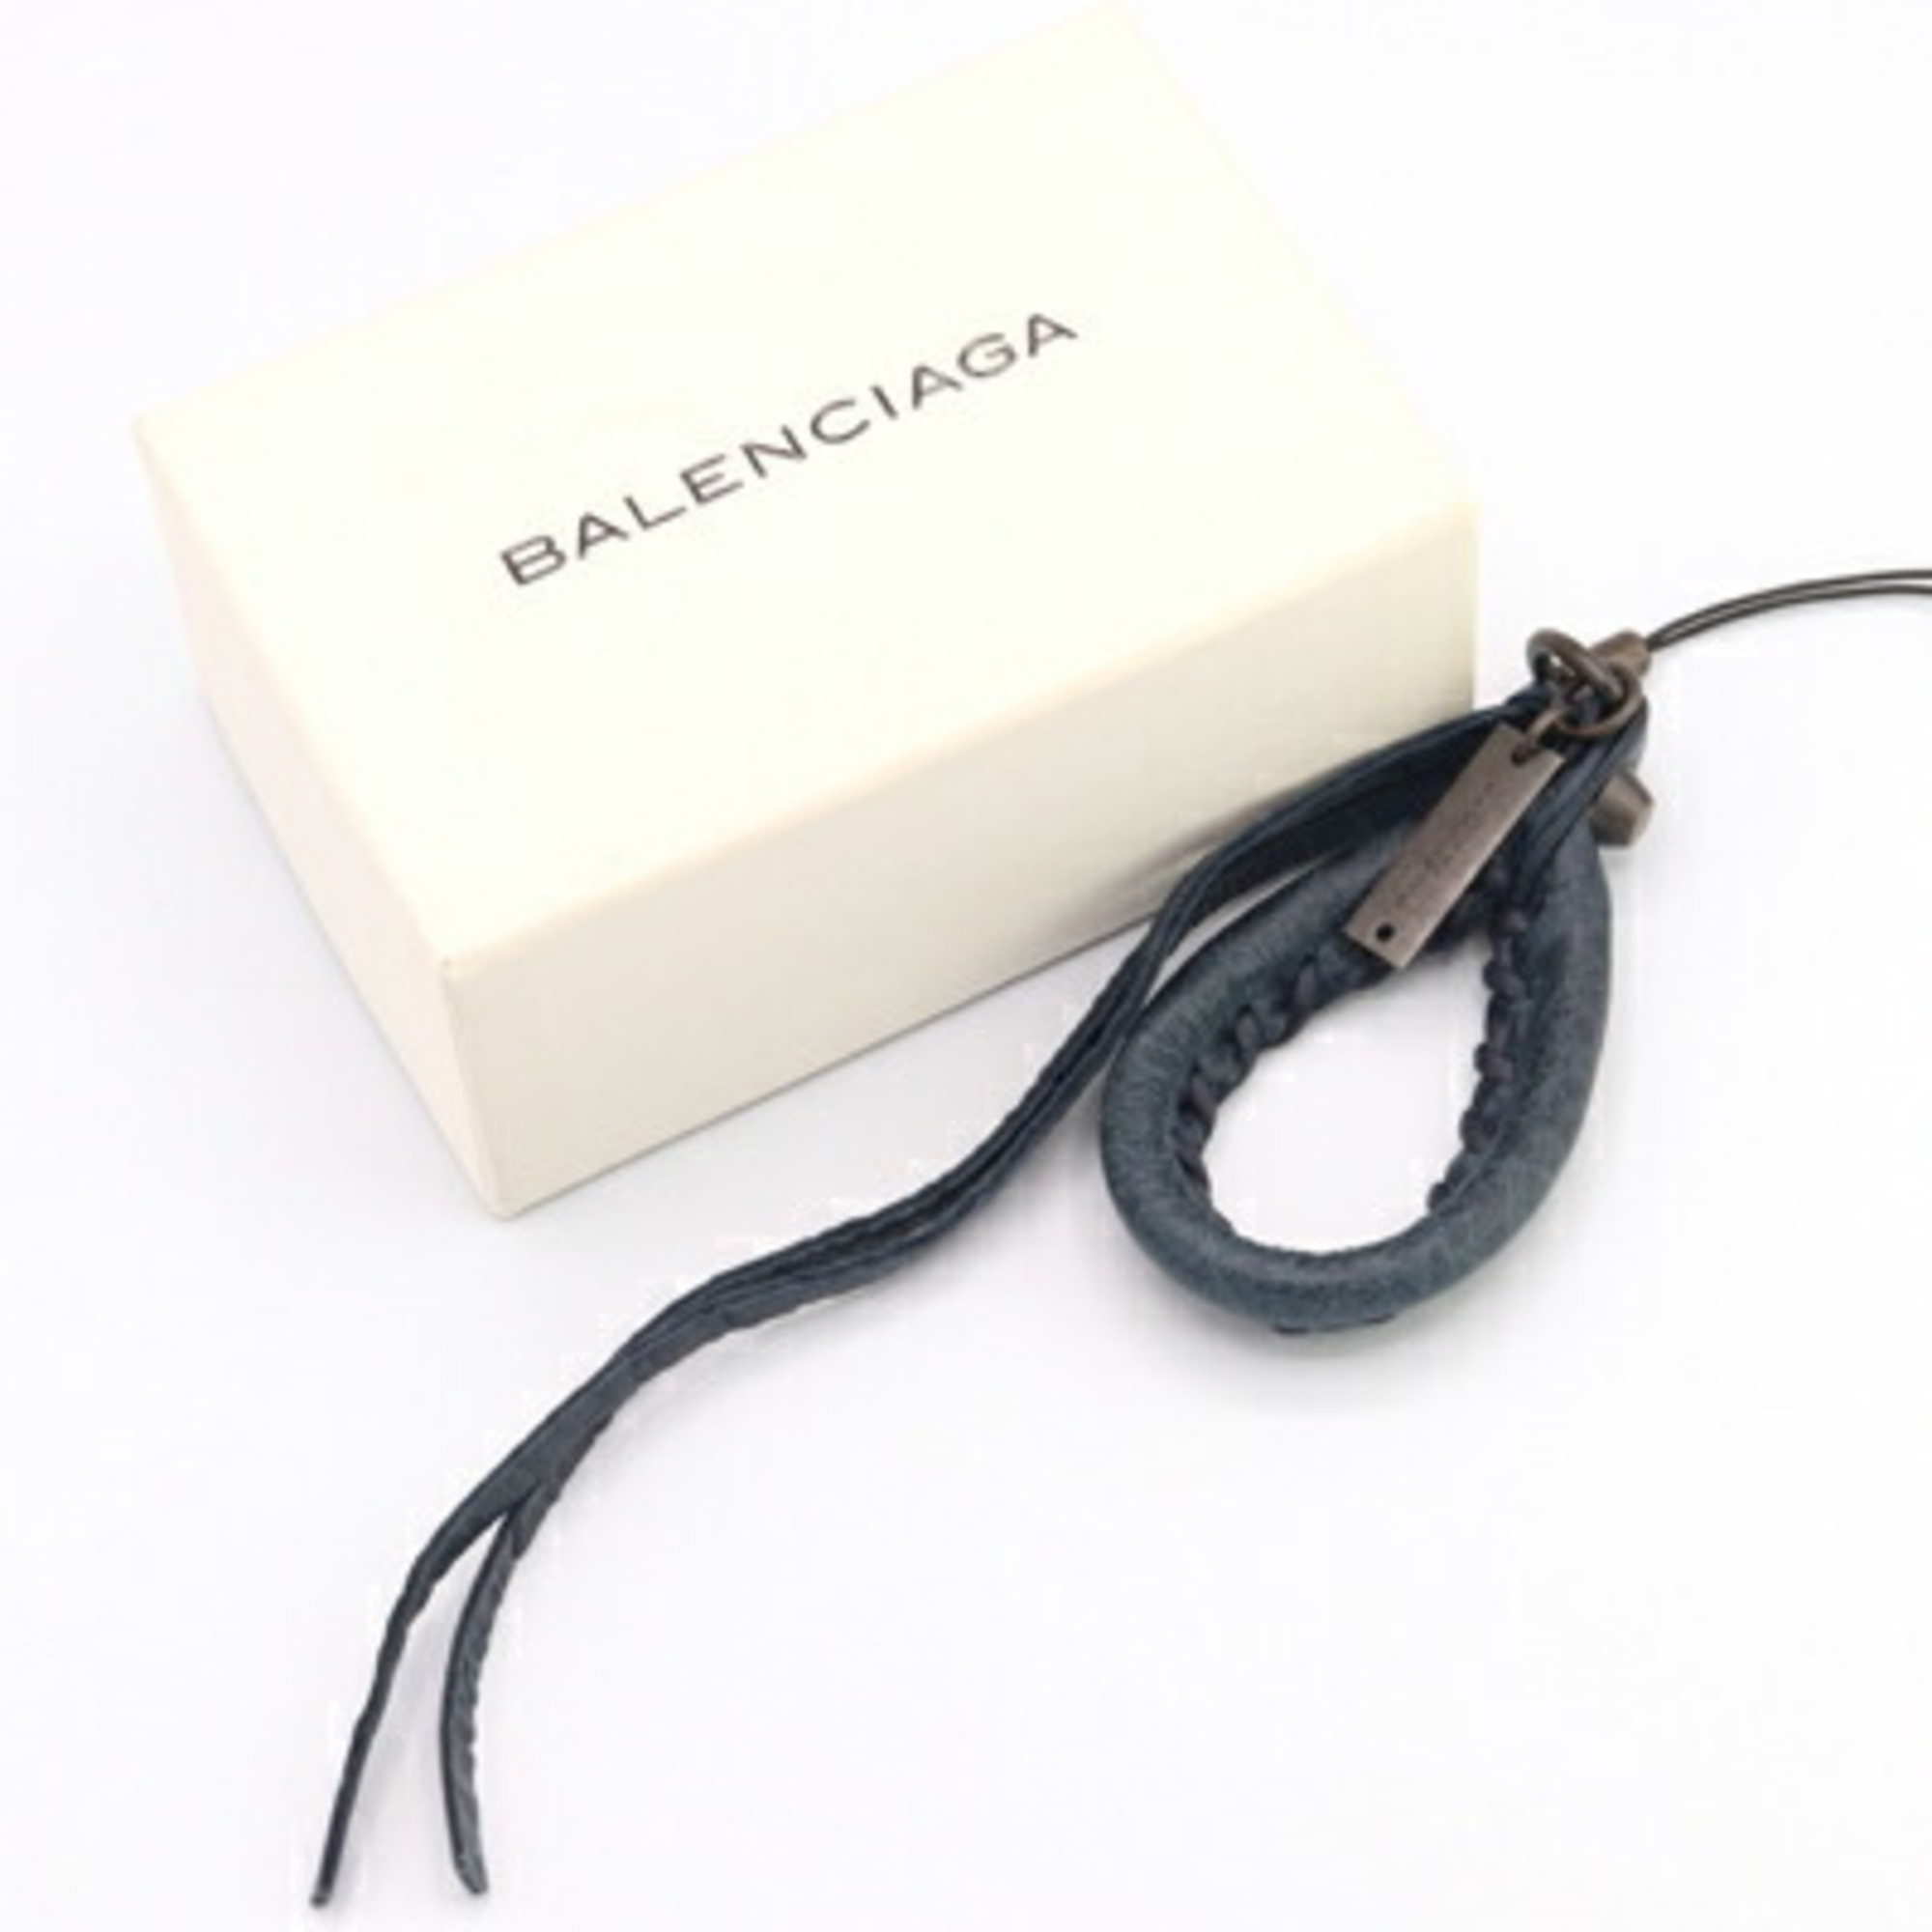 Balenciaga Mobile Phone Strap 197746 Navy Leather Bag Charm Smartphone IPHONE Women's BALENCIAGA